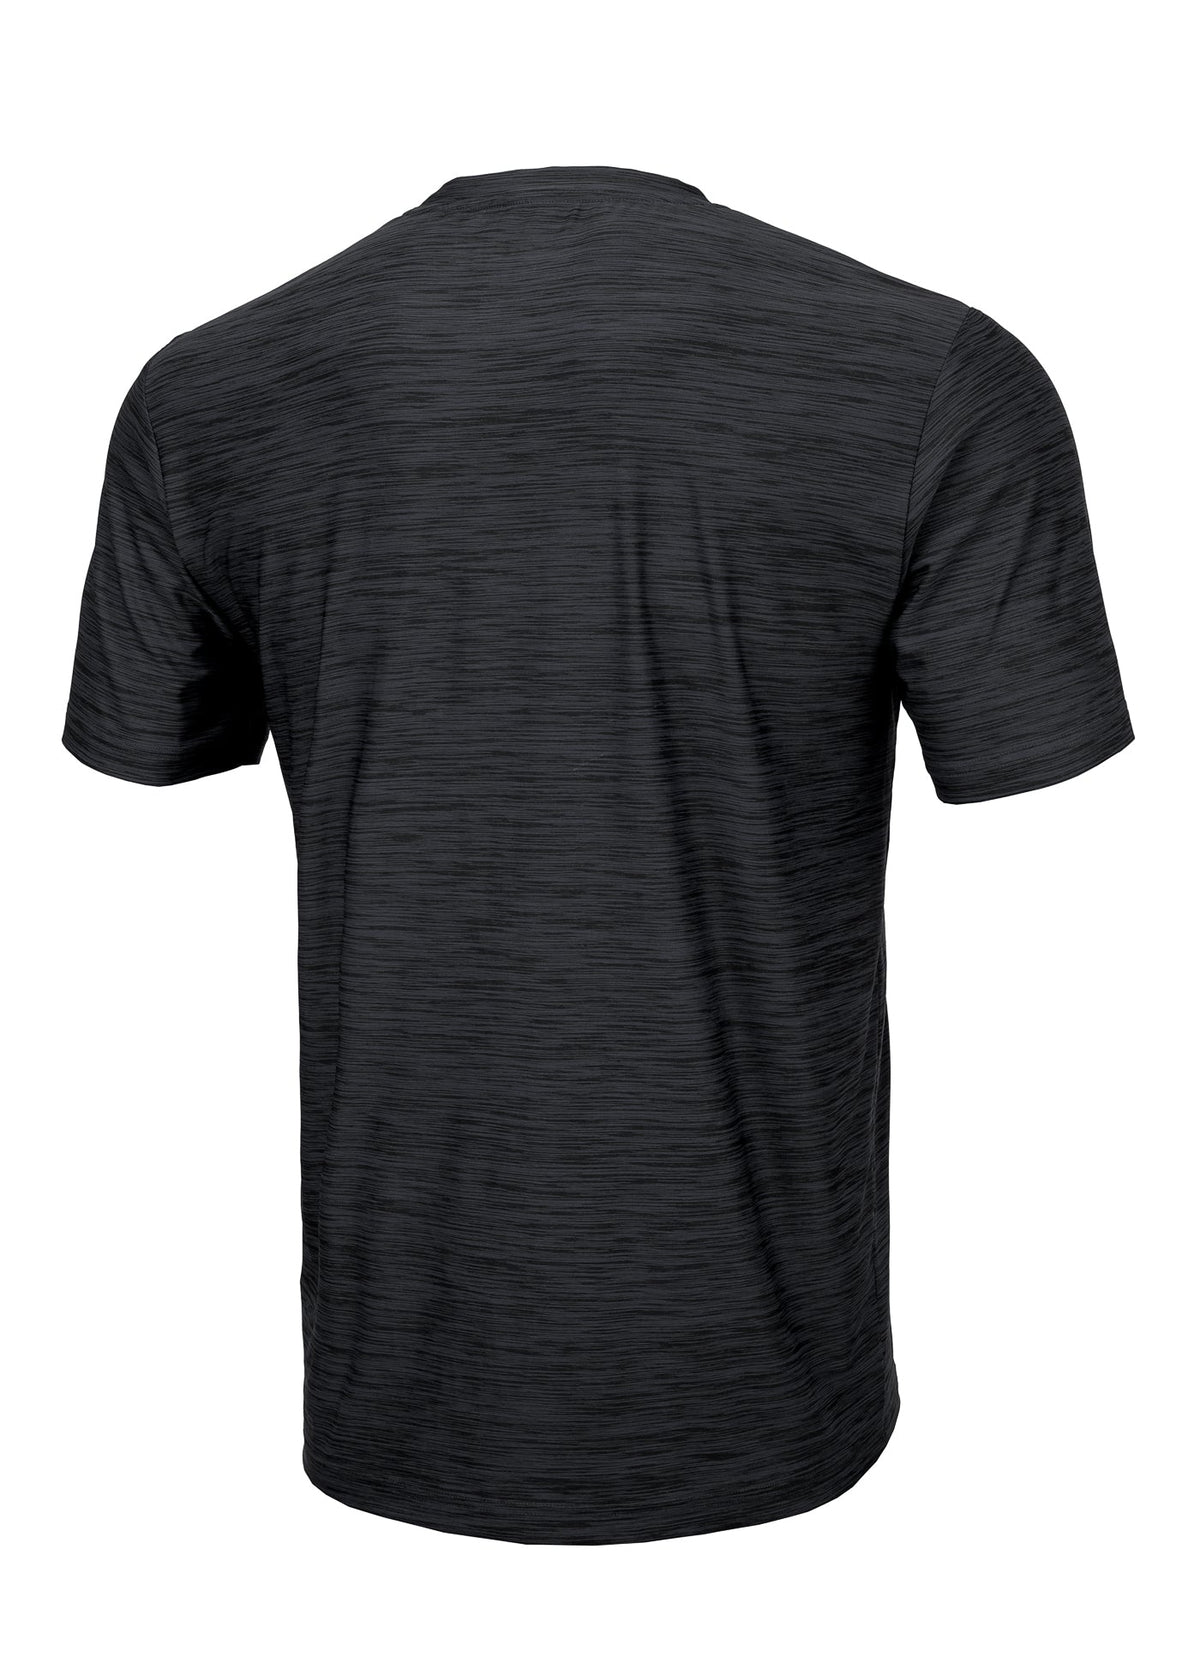 T-shirt Middleweight HILLTOP Black Melange